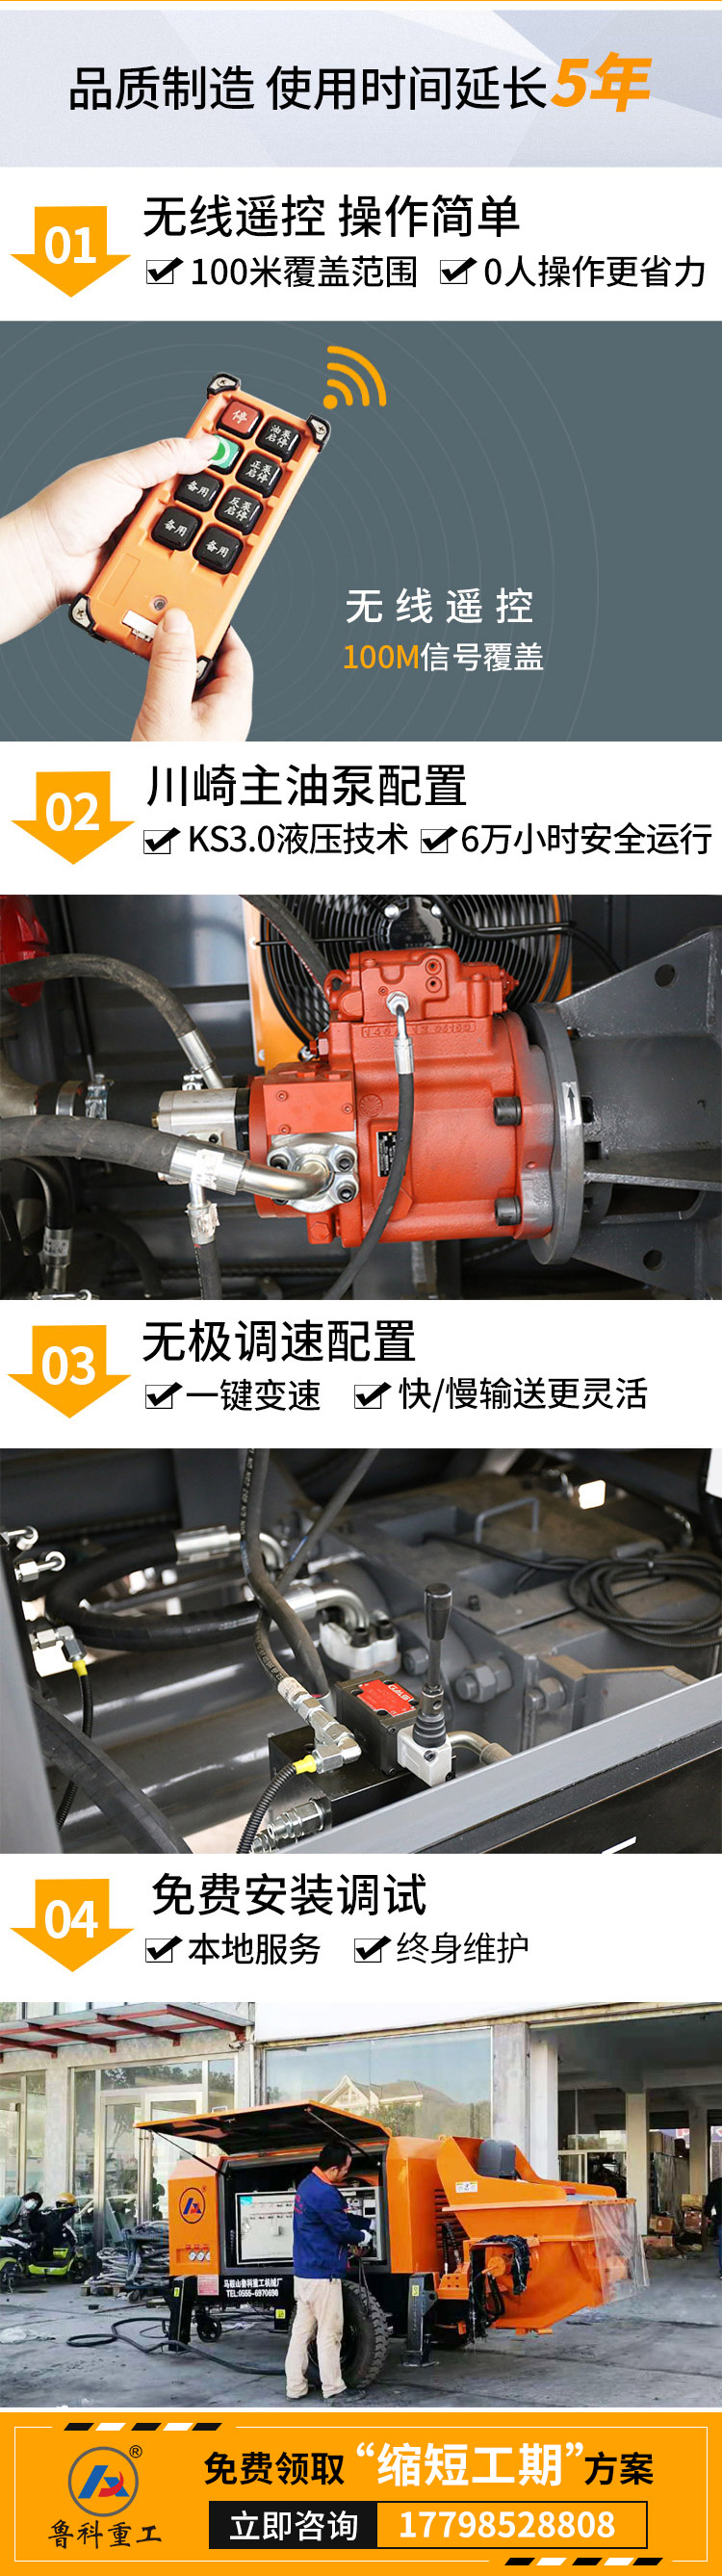 佳乐地泵专用液压齿轮泵.jpg